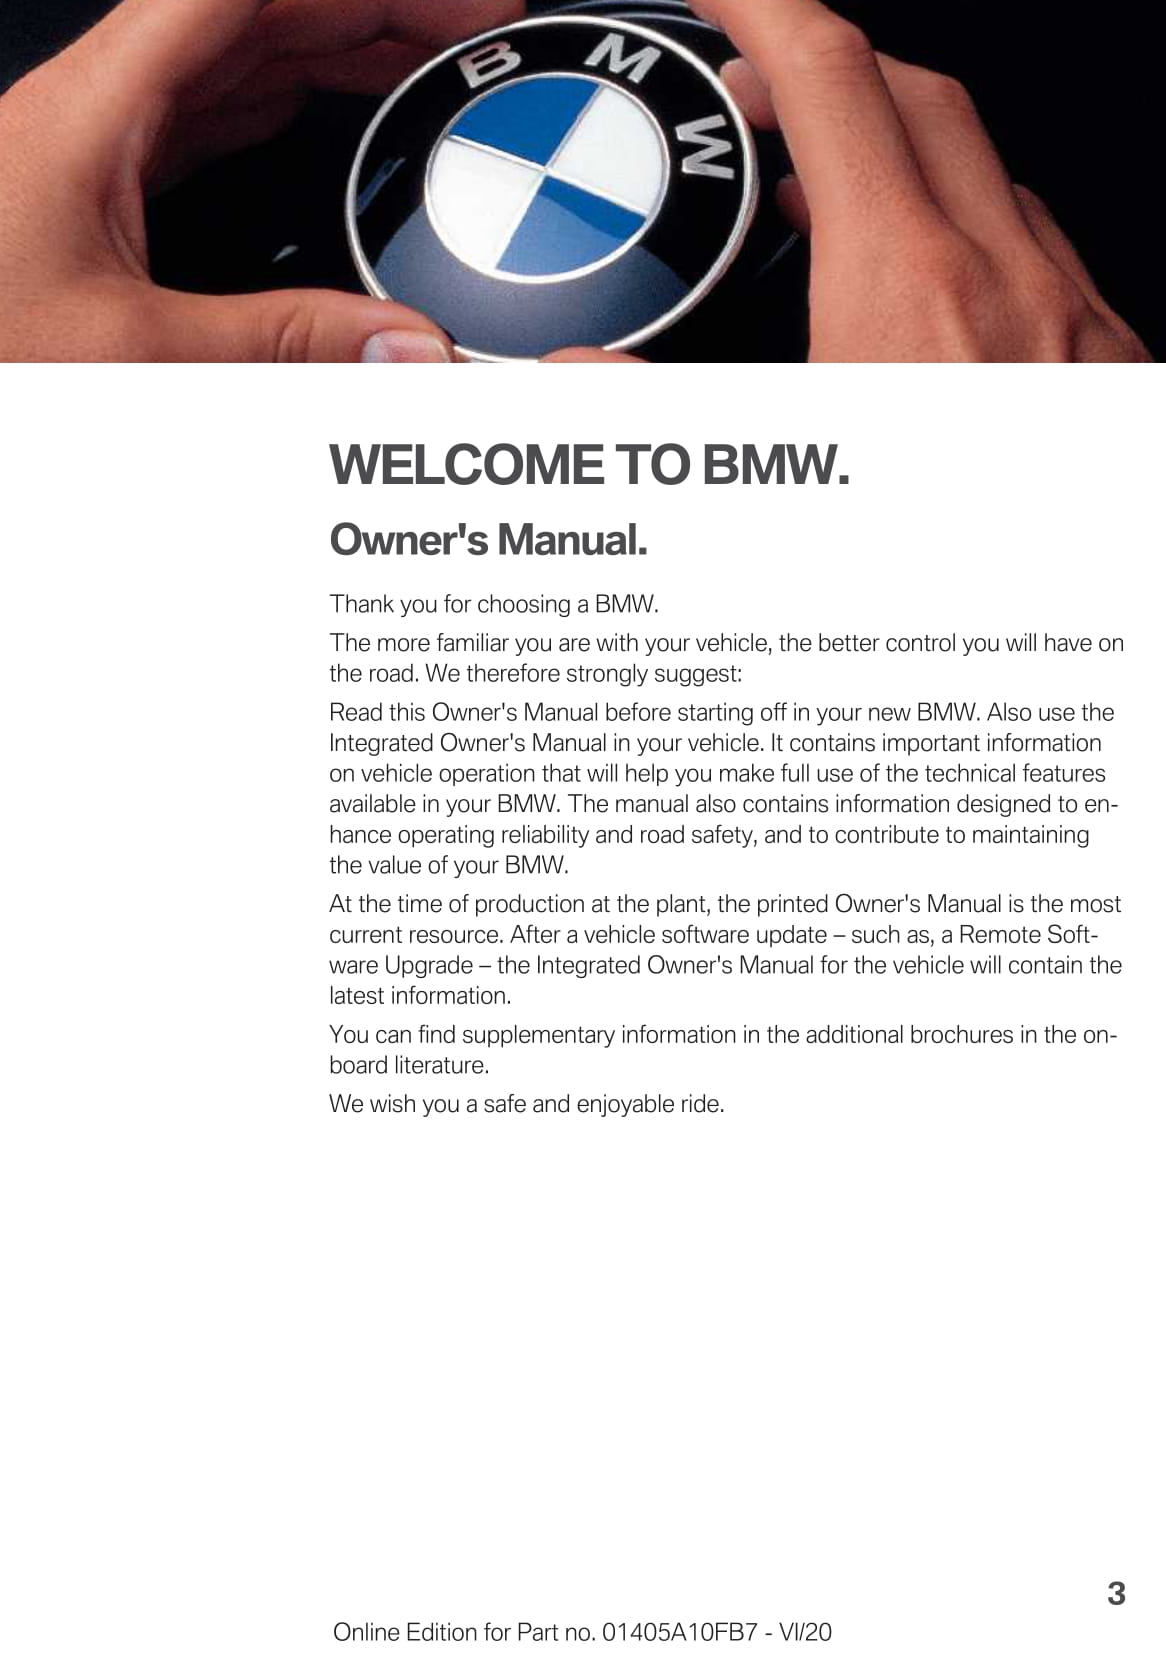 2021 BMW X5 Bedienungsanleitung | Englisch